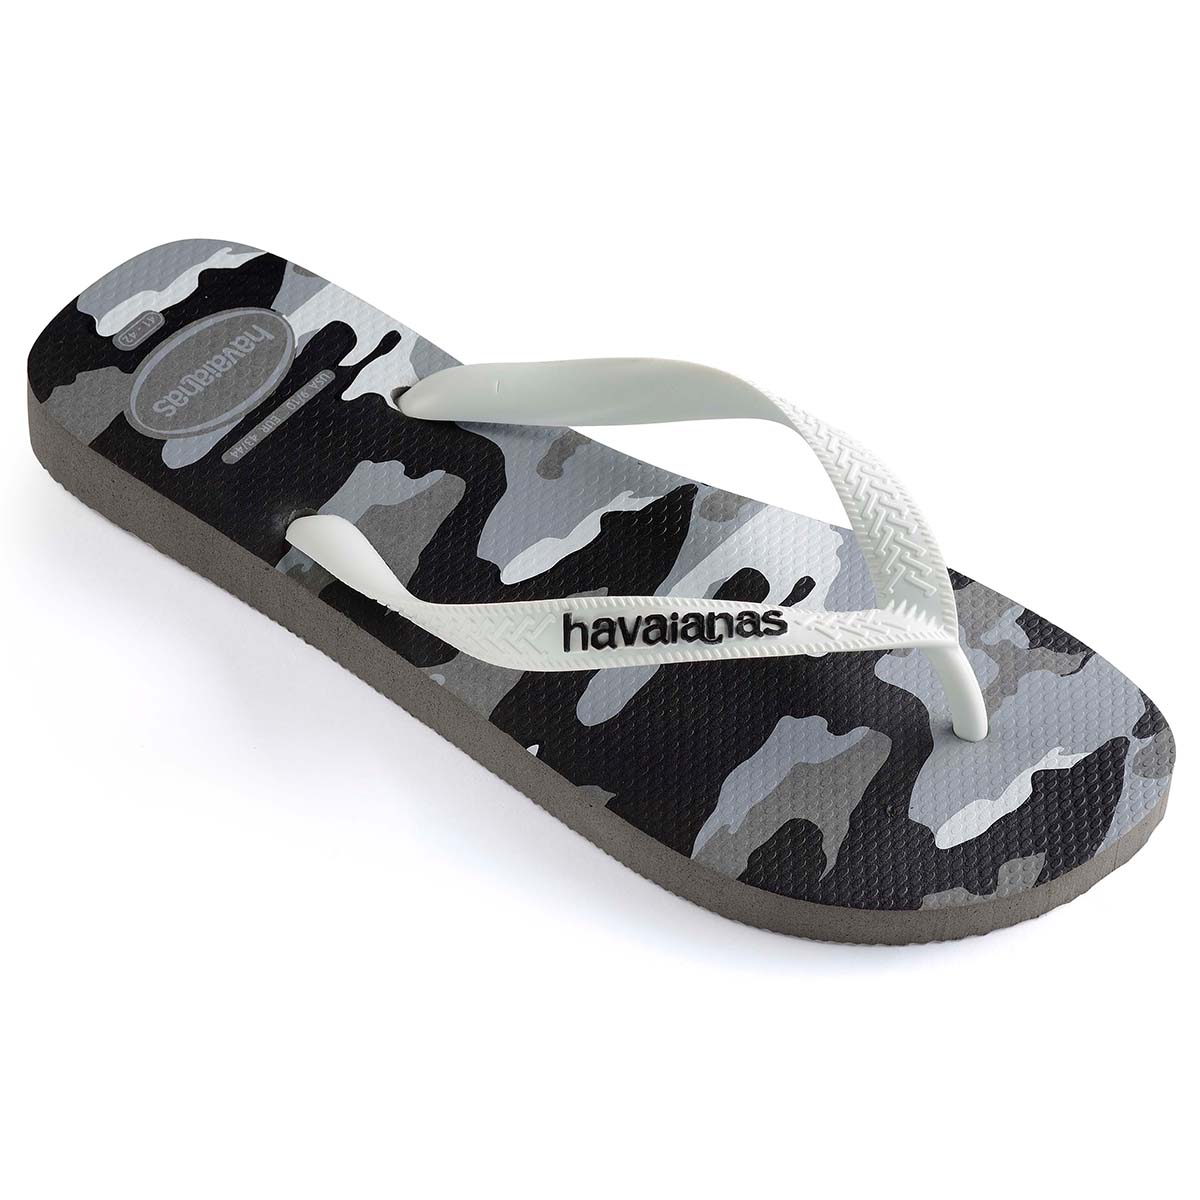 Havaianas Top Camu Unisex Erwachsene Sandalen Zehentrenner Badelatschen 4141398 Grau/Weiß